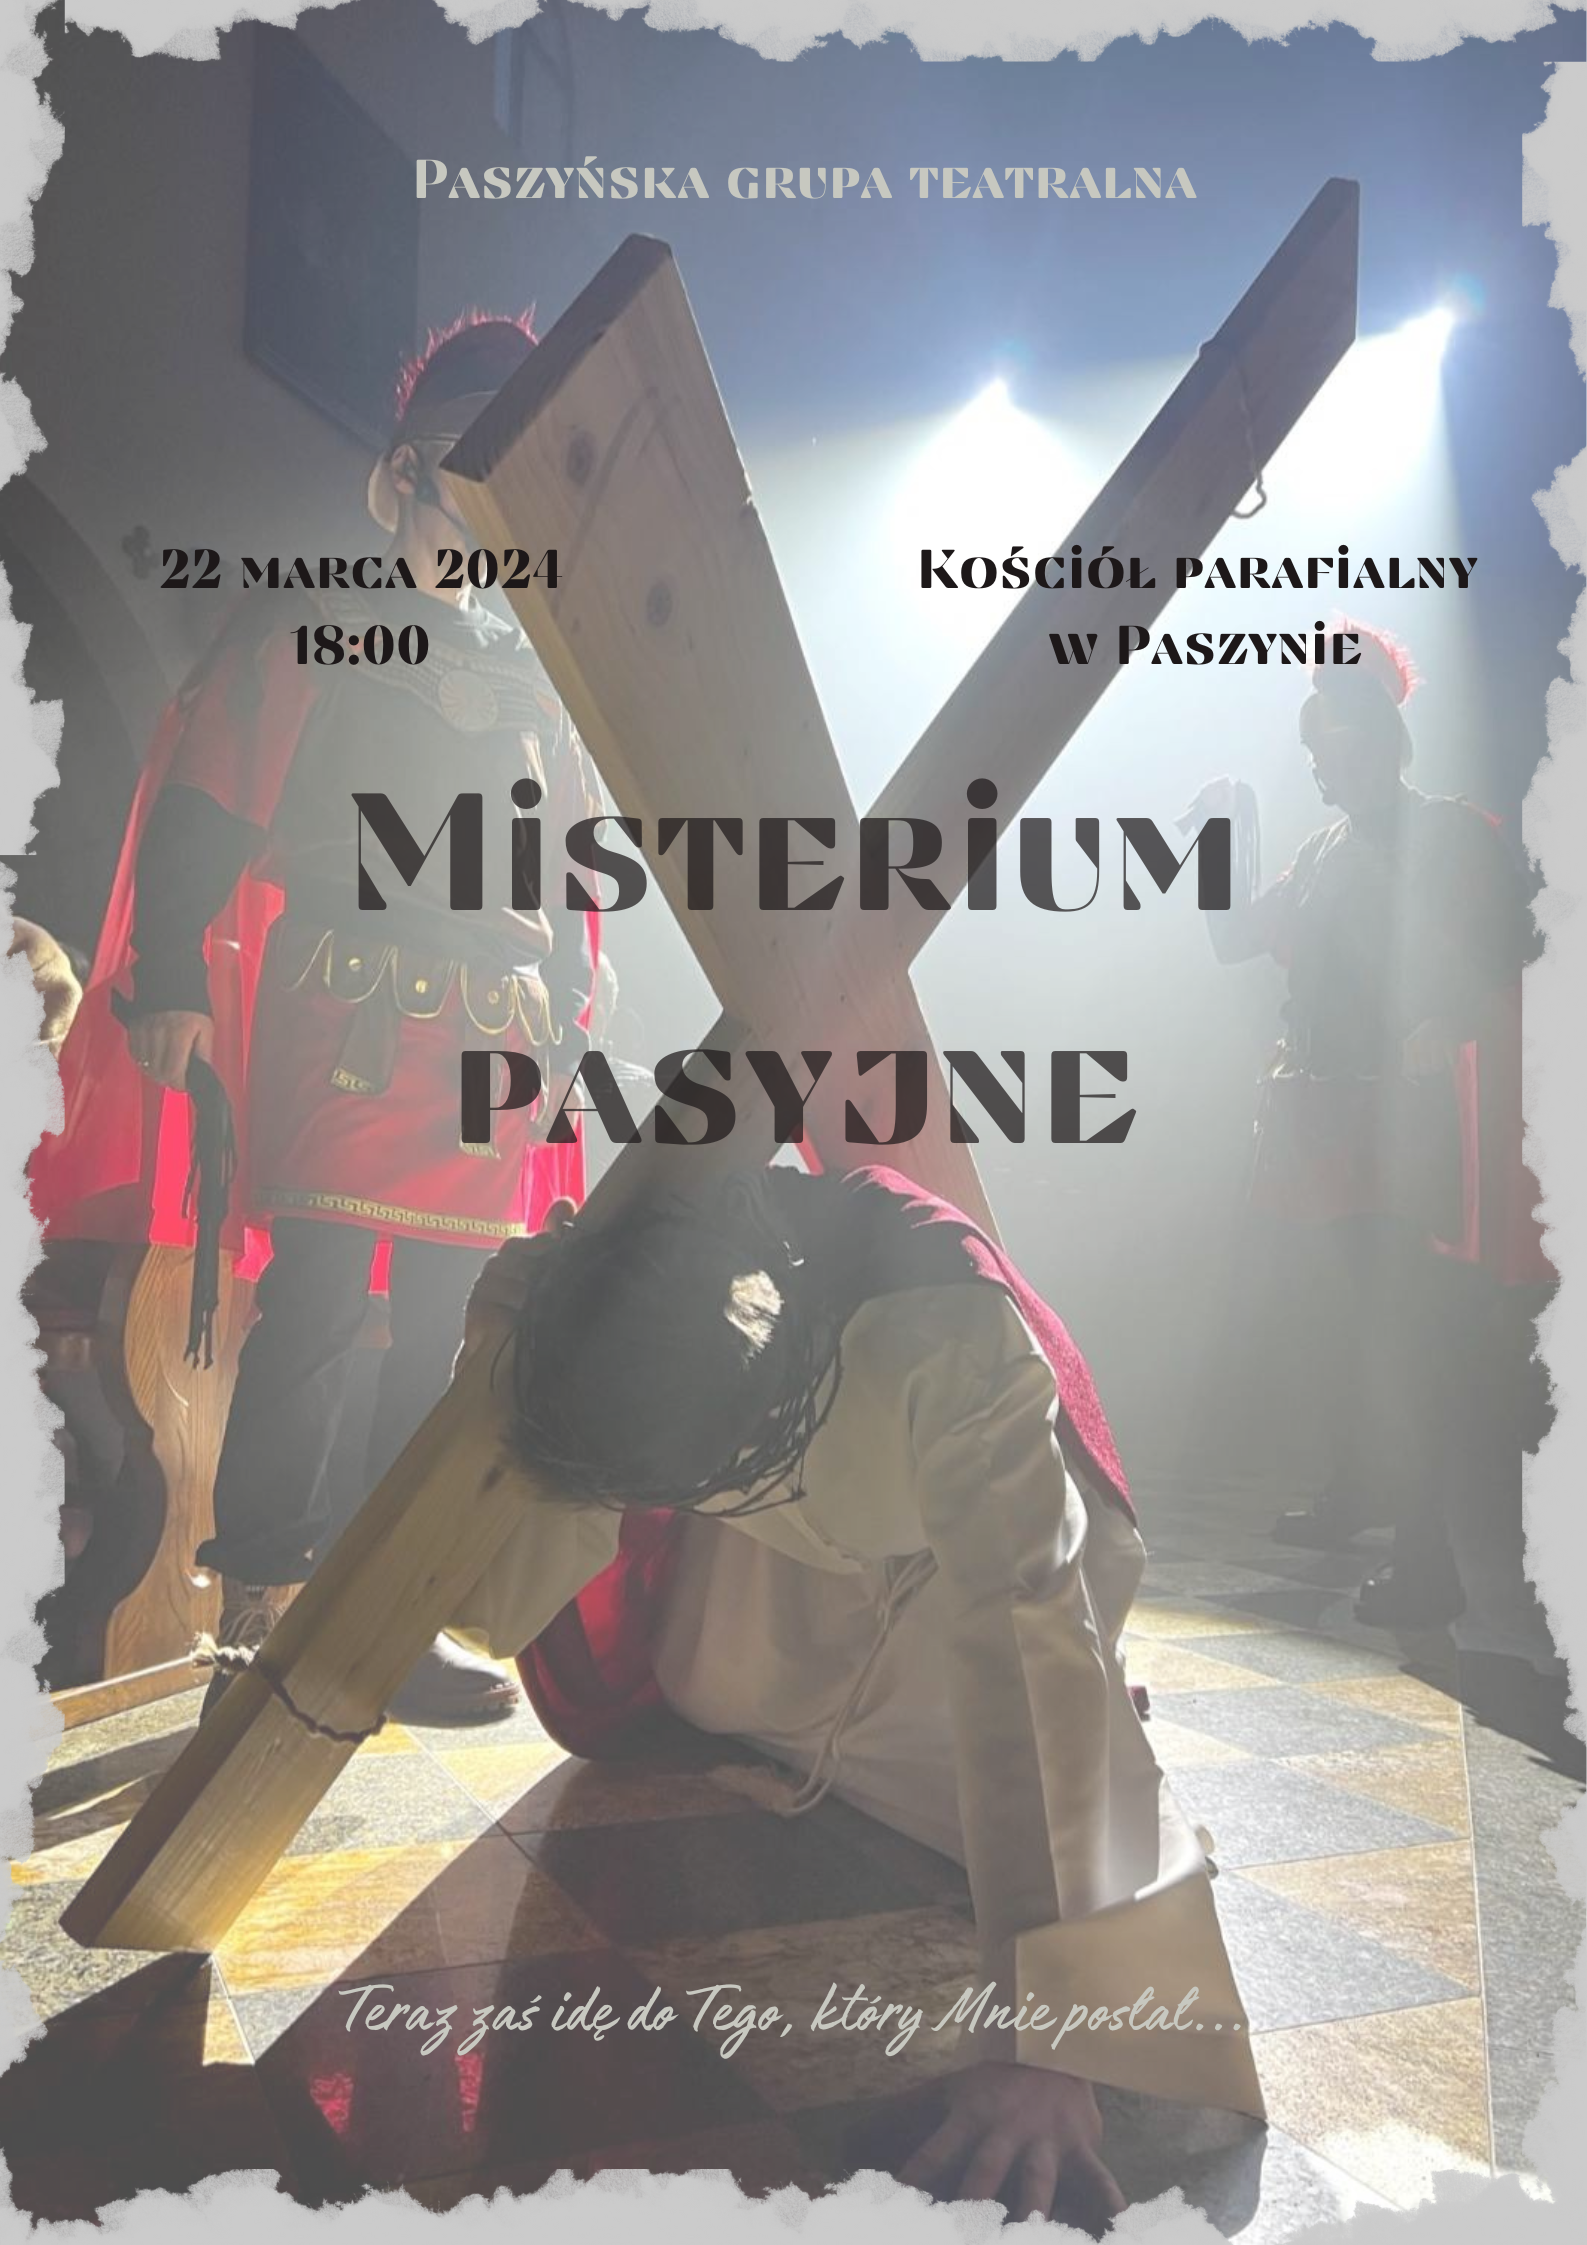 Plakat: Paszyńska Grupa Teatralna zaprasza na Misterium Pasyjne 22 Marca 2024 - 18:00 Kościół Parafialny w Paszynie